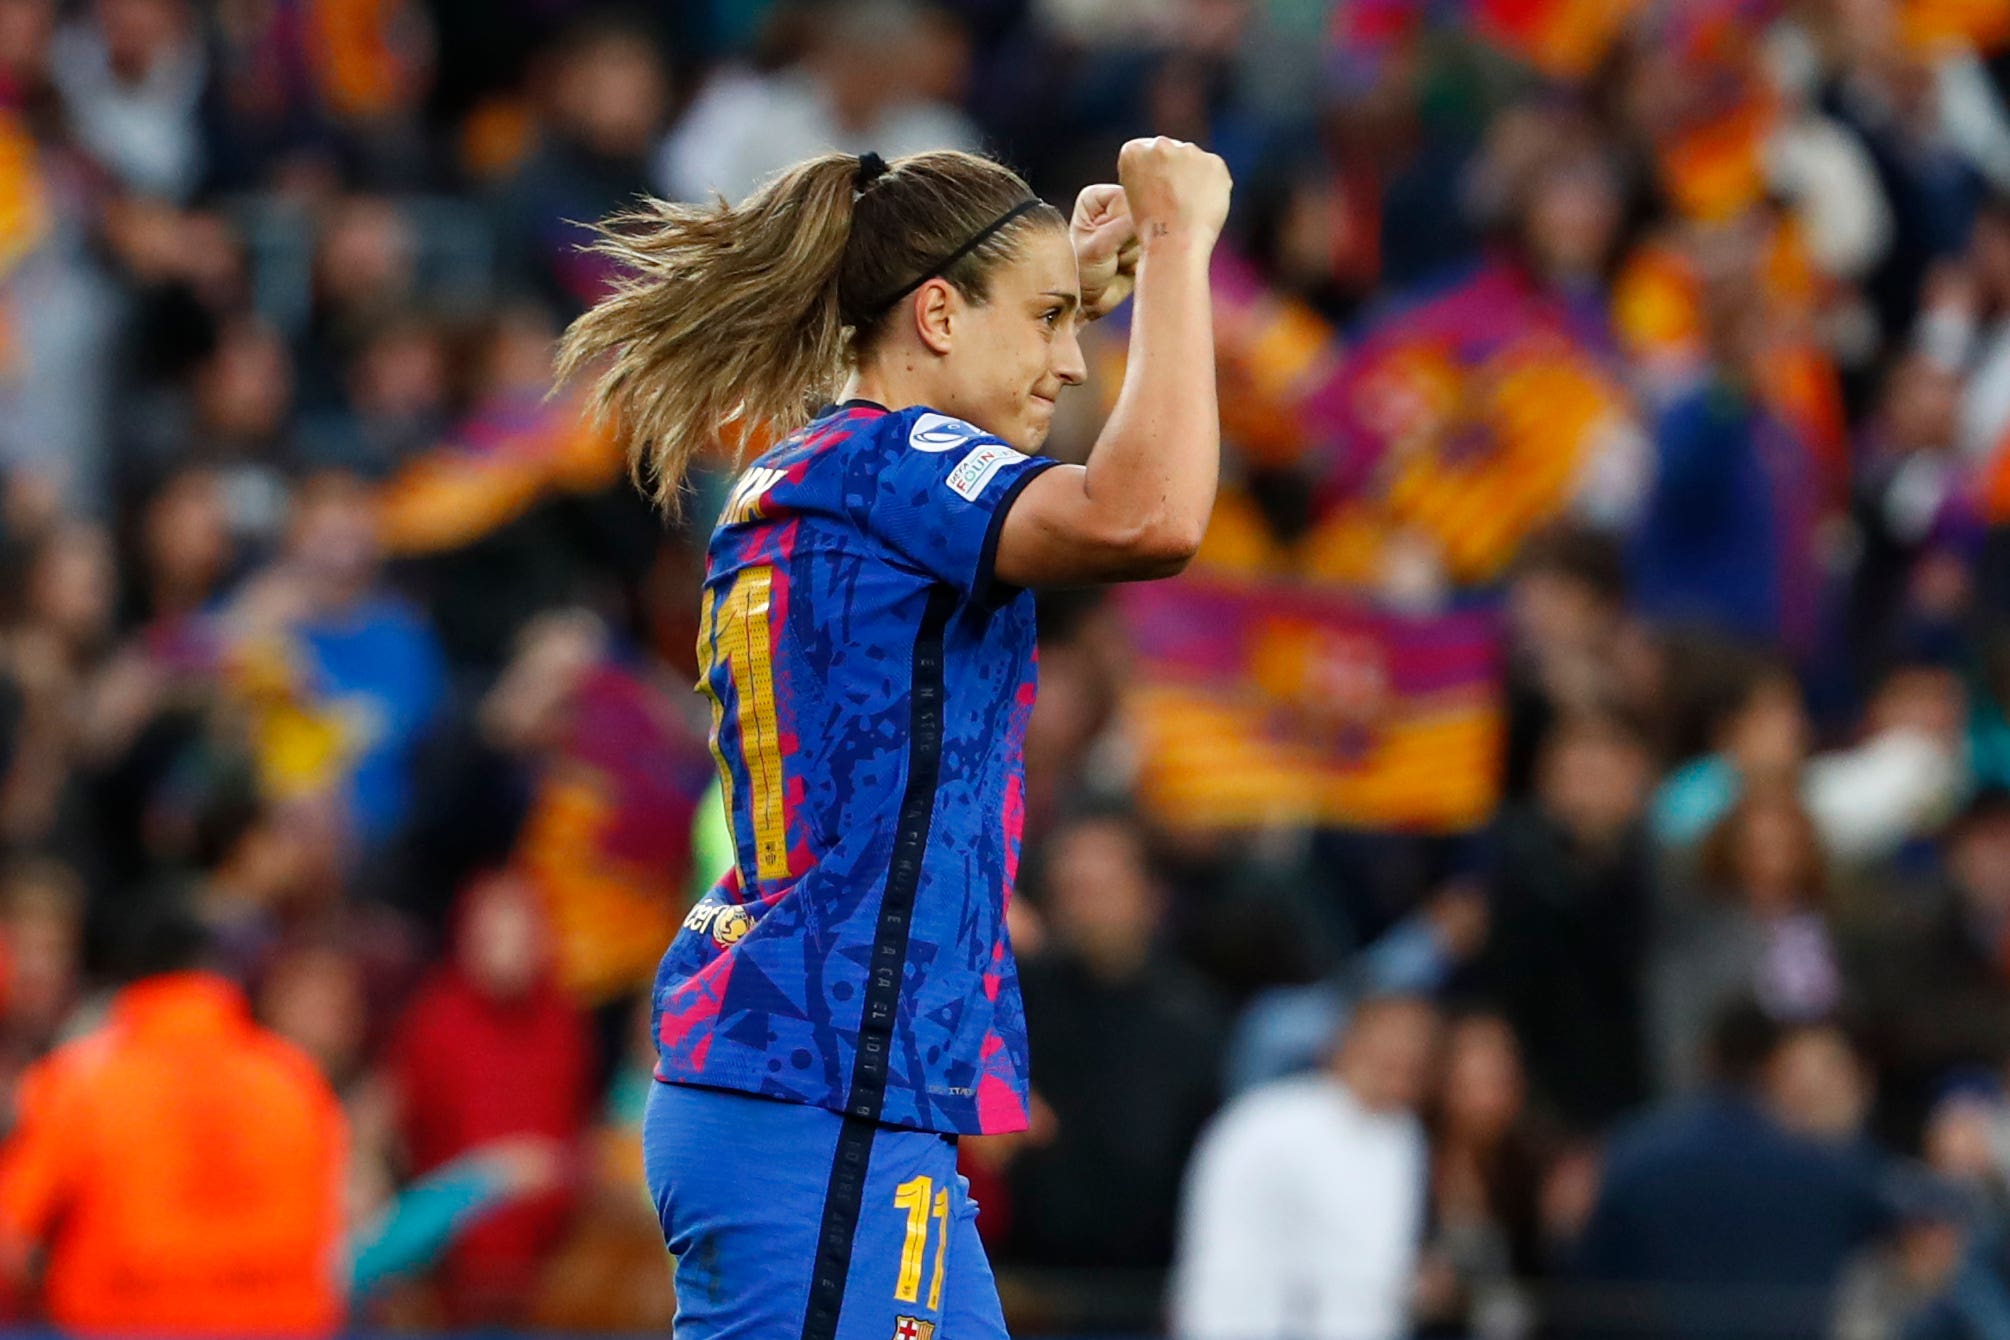 Kỷ lục tham dự bóng đá nữ bị phá vỡ: Barcelona nữ phá kỷ lục của chính mình ở Champions League 